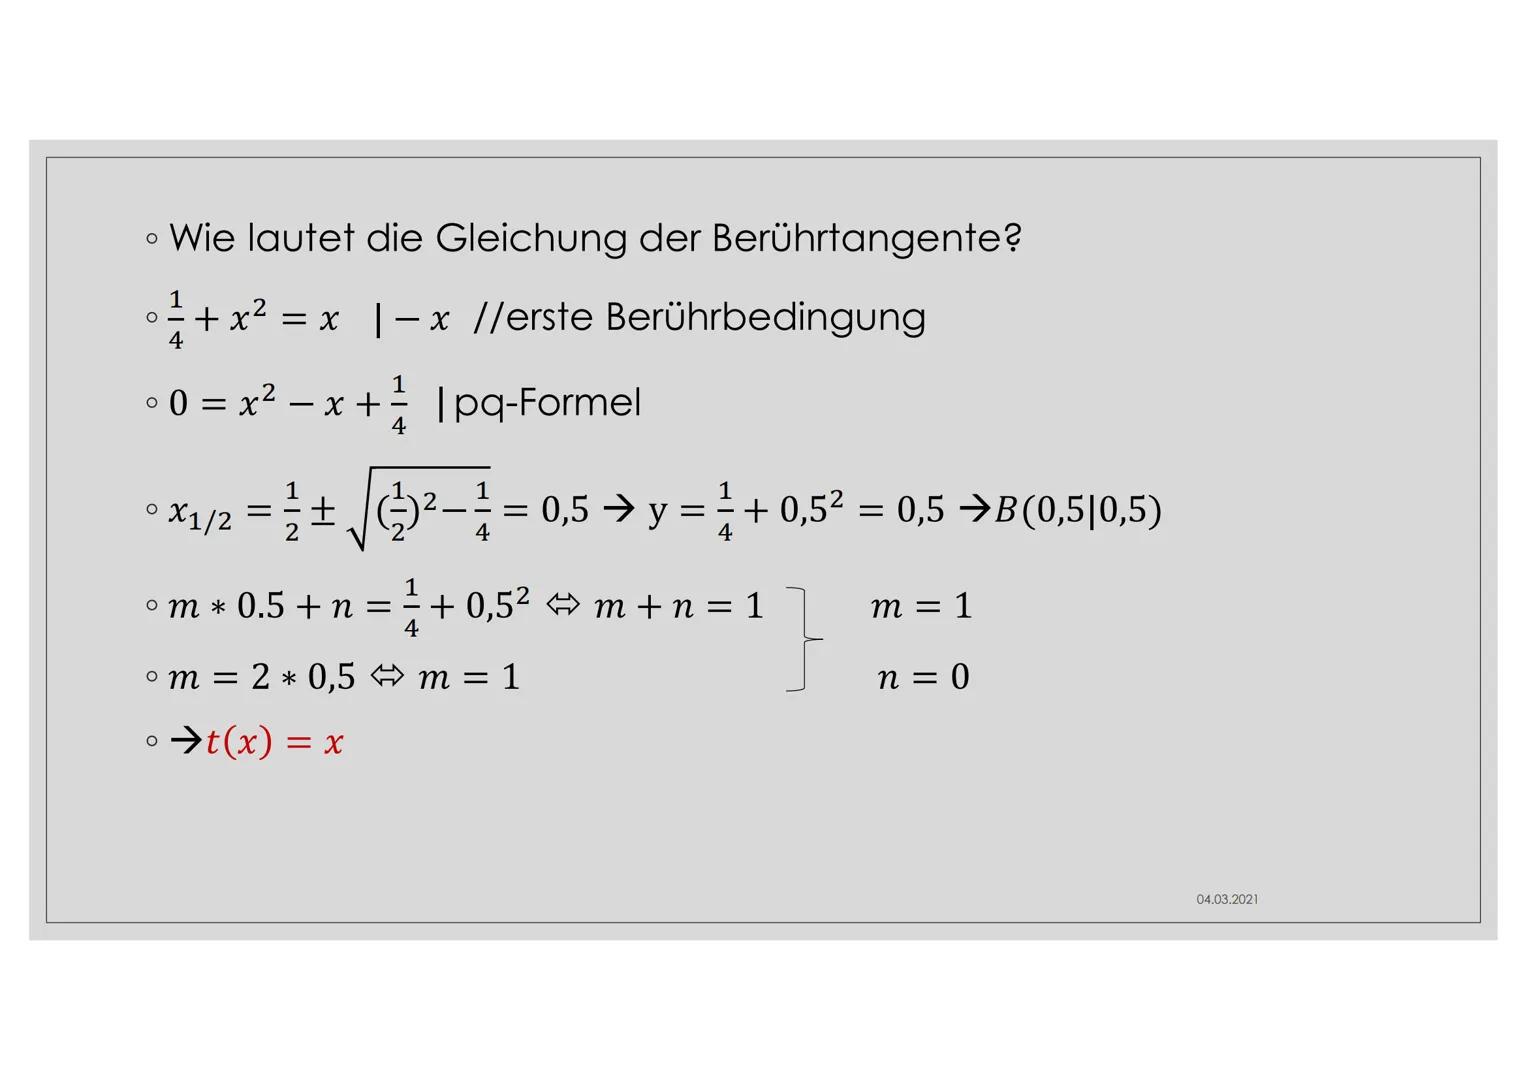 BERÜHRPROBLEM Thema
• Es berühren sich zwei Funktionen an einer Stelle (→ f und g
berühren sich an XB)
O
Diese Stelle nennt man Berührpunkt
